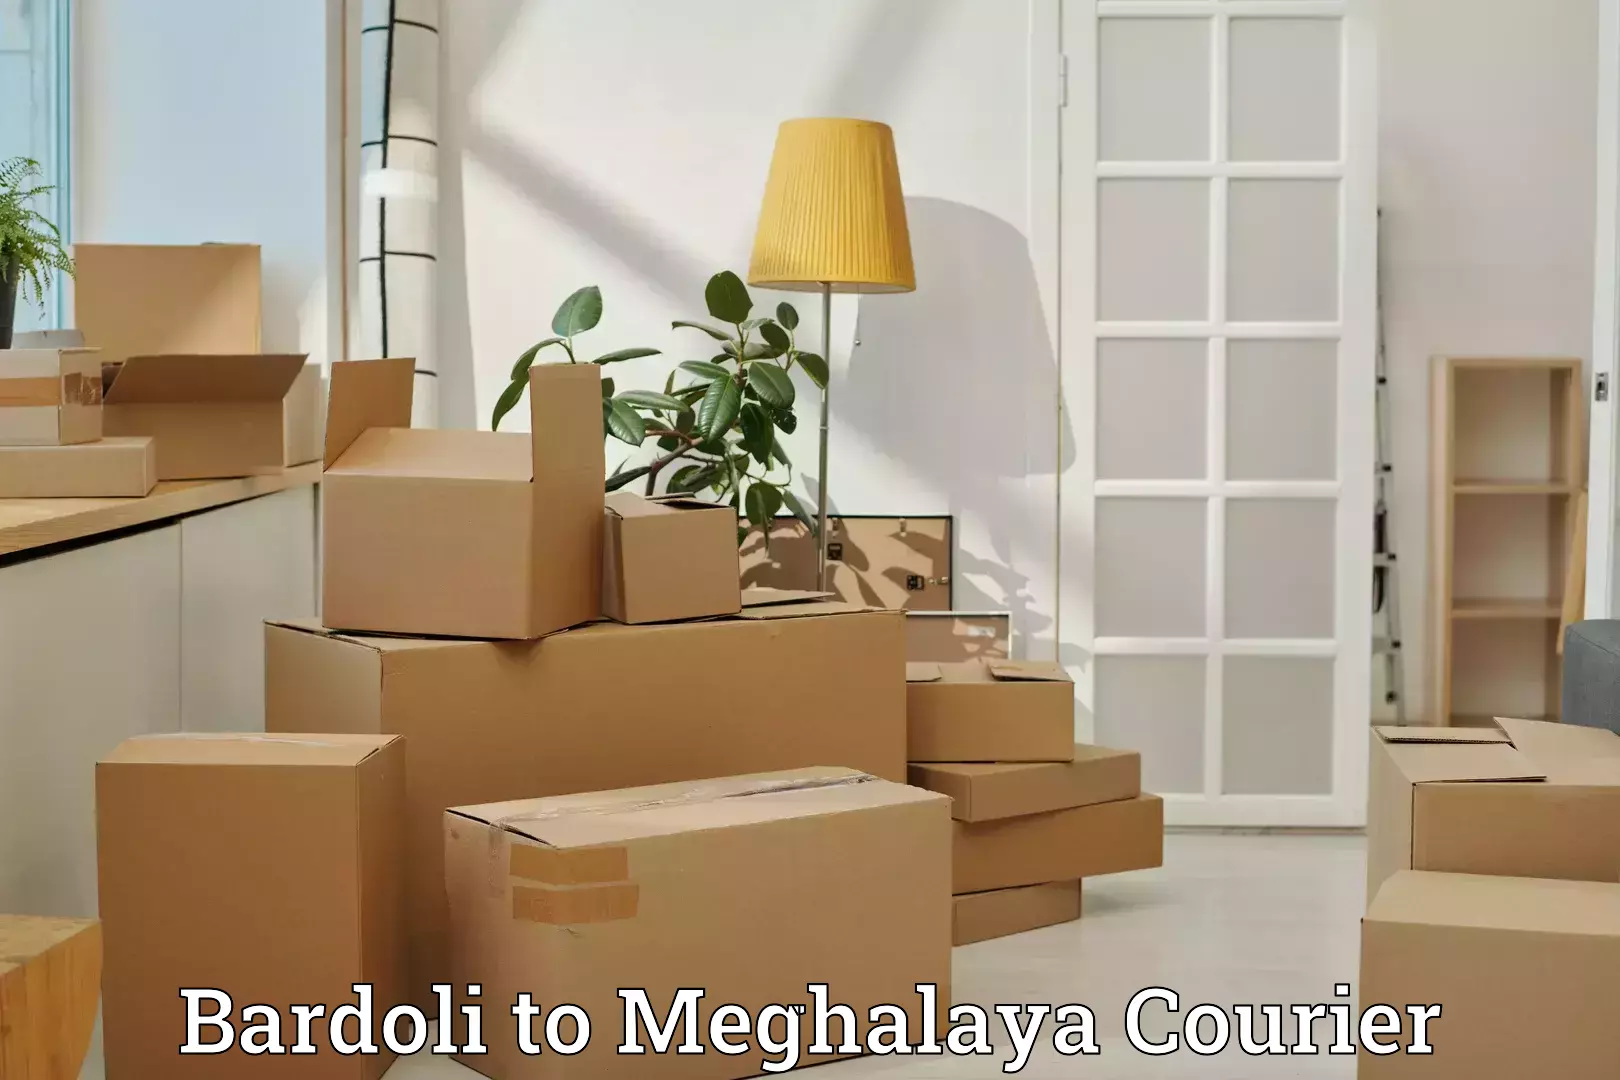 Luggage shipping service Bardoli to Meghalaya